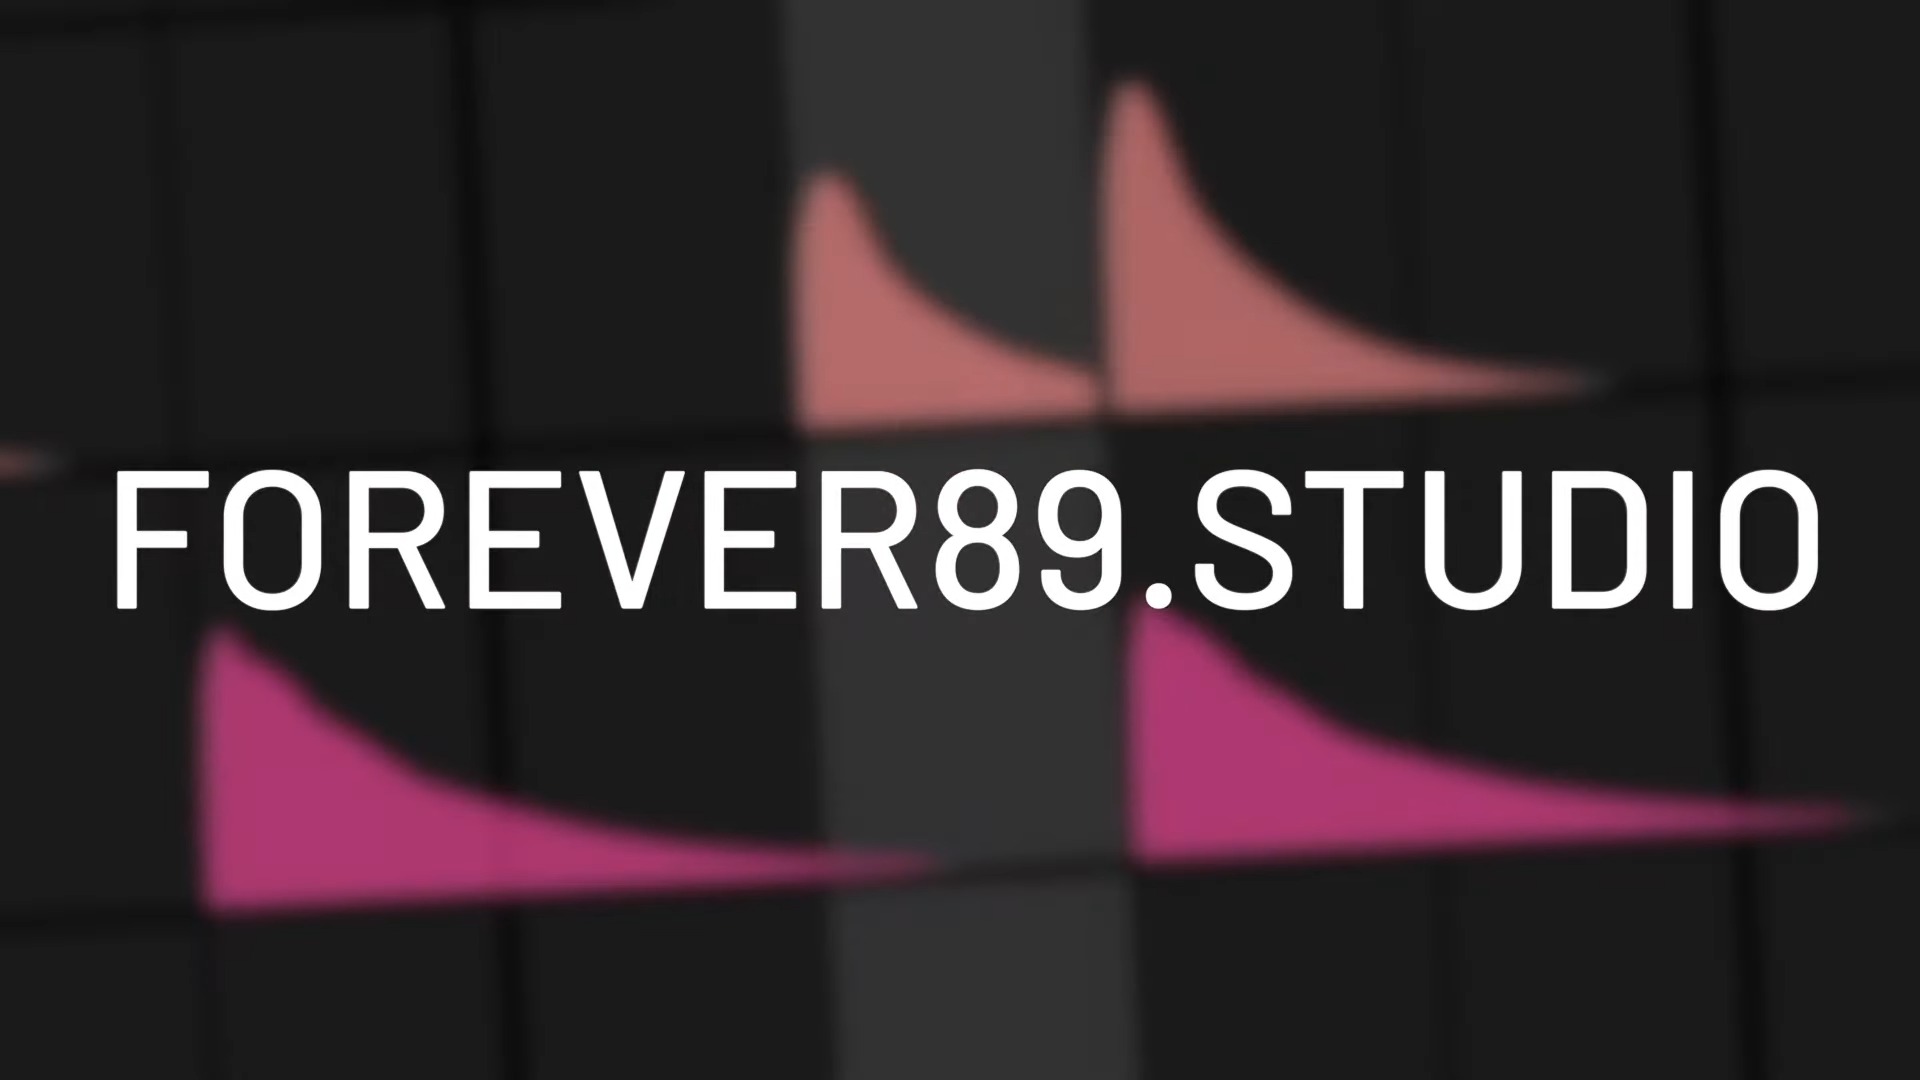 La nueva compañía Forever 89 está preparando un primer producto innovador para los músicos modernos